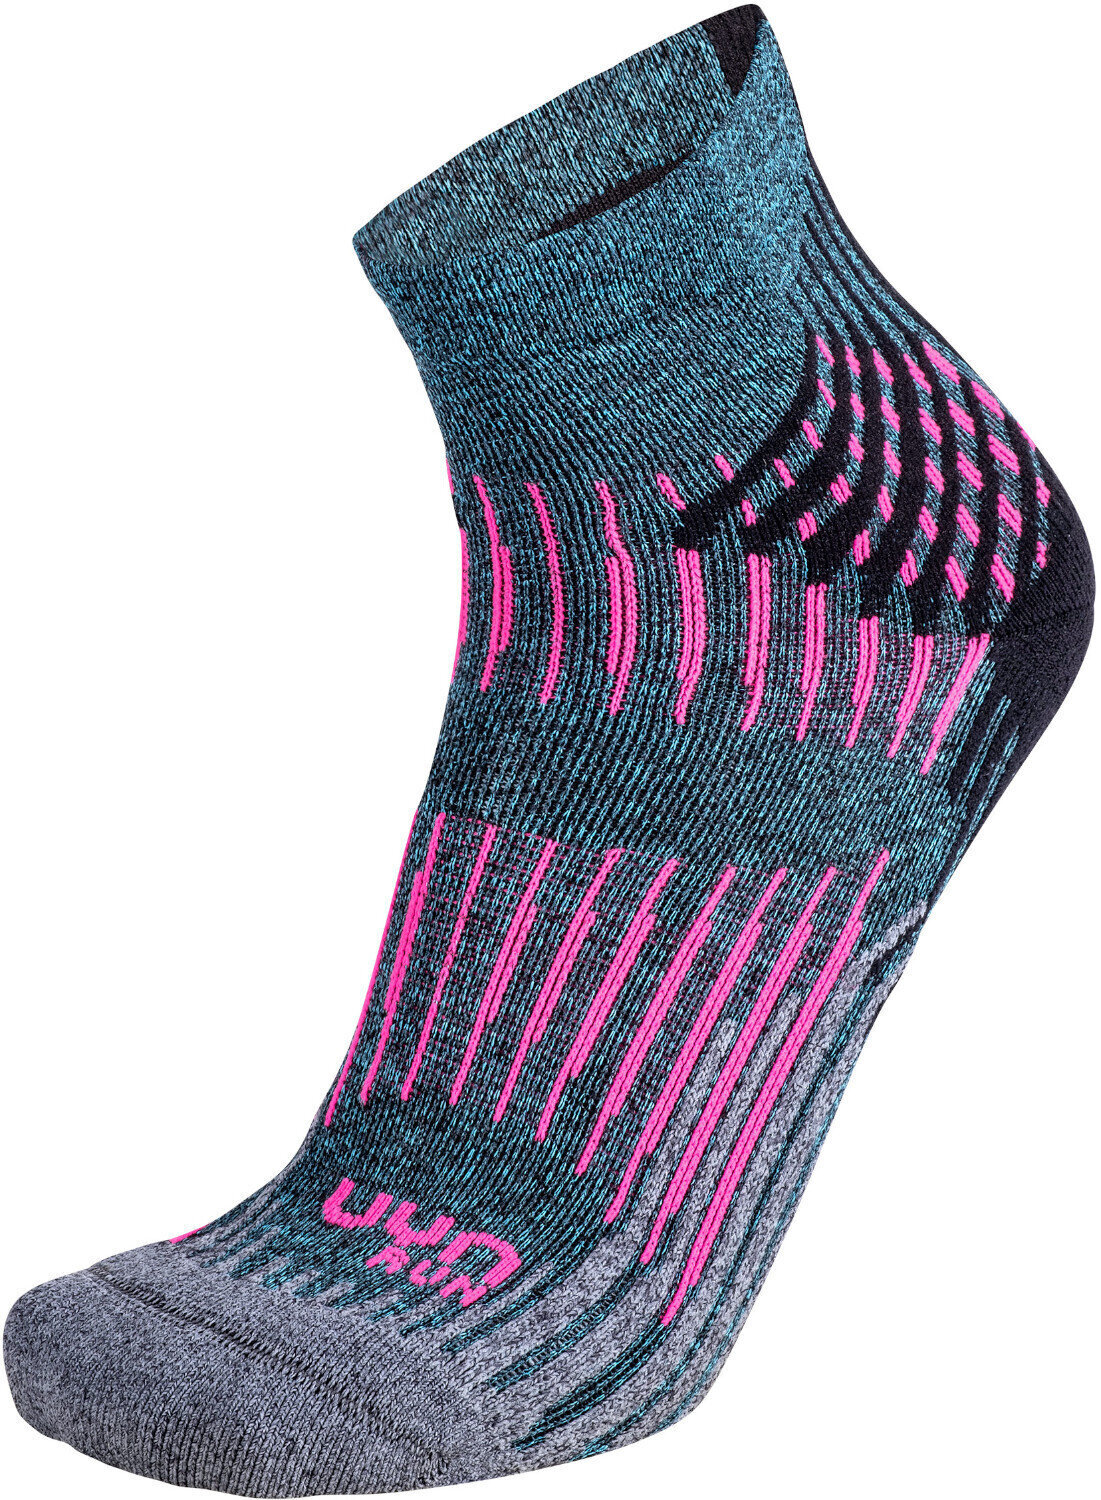 Чорапи за бягане
 UYN Run Shockwave Turquoise Melange-Grey-Pink 37/38 Чорапи за бягане